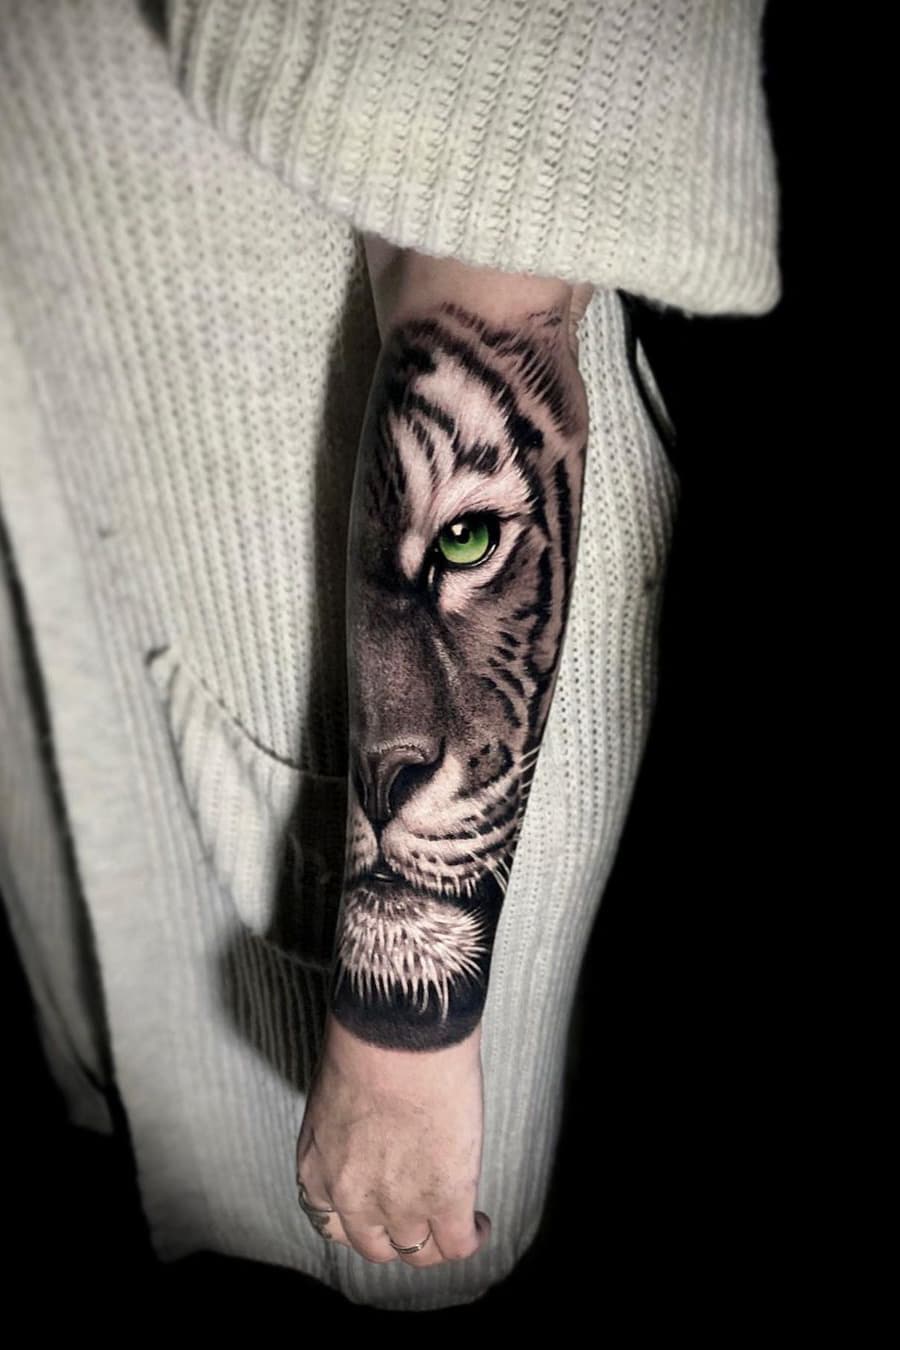 Realistic Tiger Tattoo